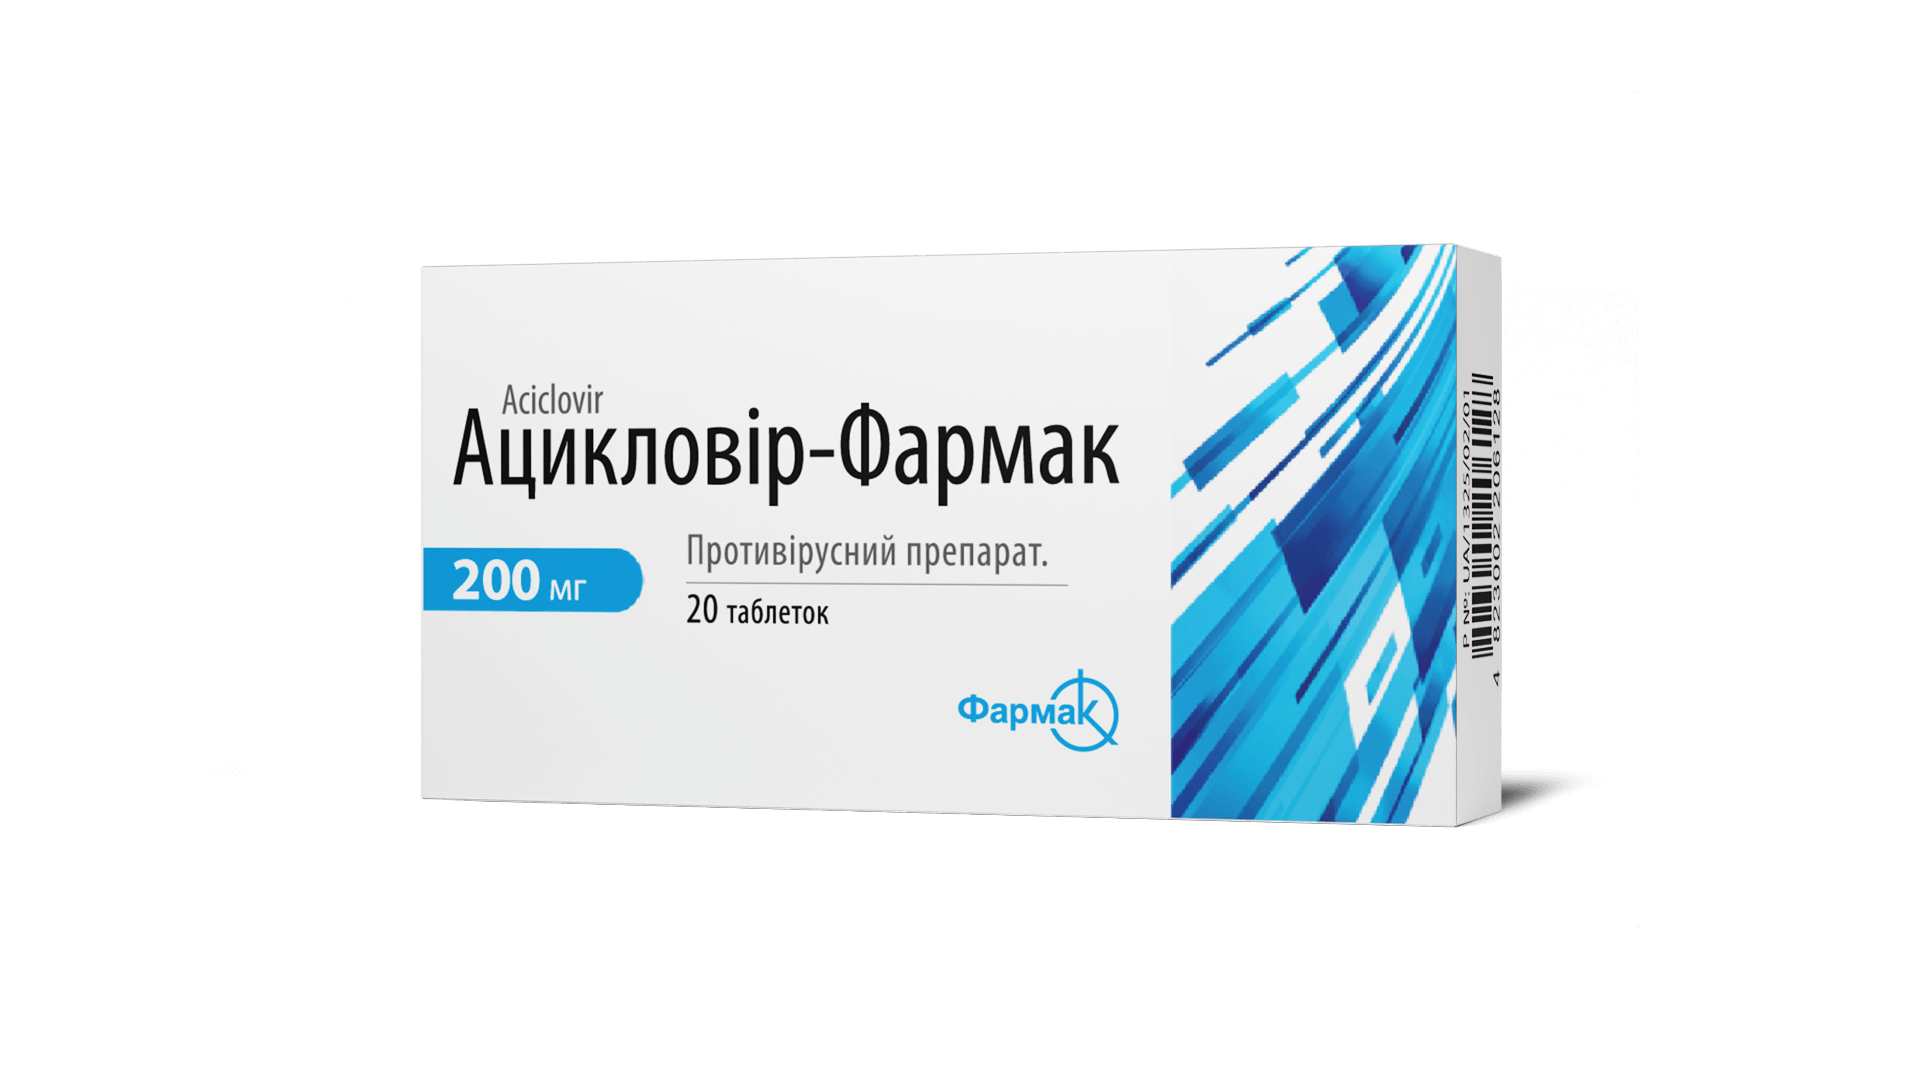 Ацикловір-Фармак (3)